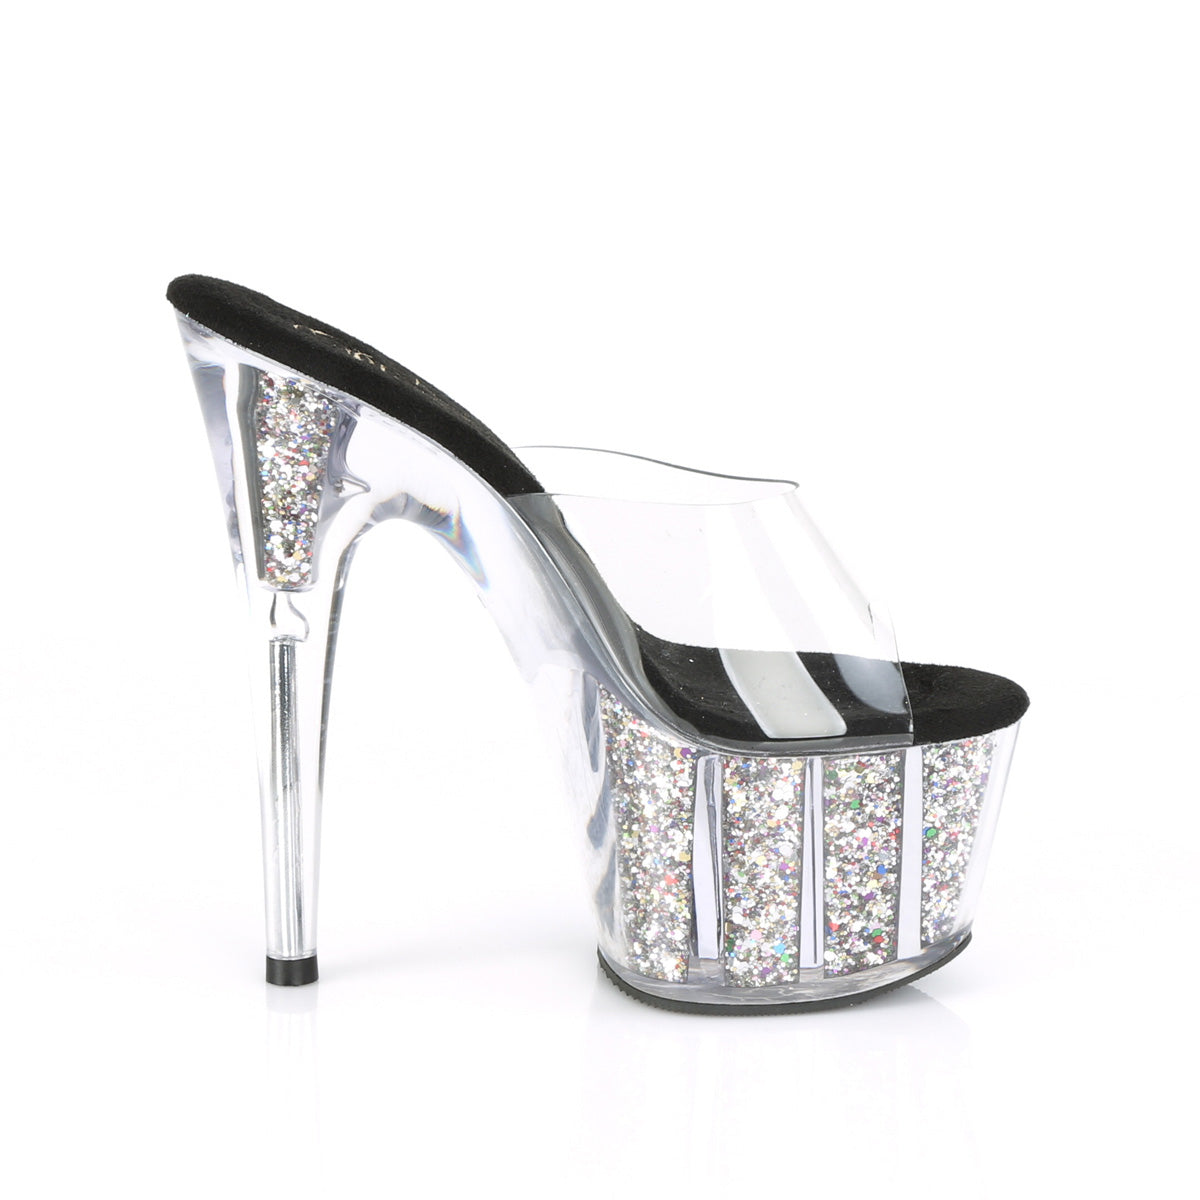 Pleaser Womens Sandals ADORE-701CG Clr/Slv Confetti Glitter